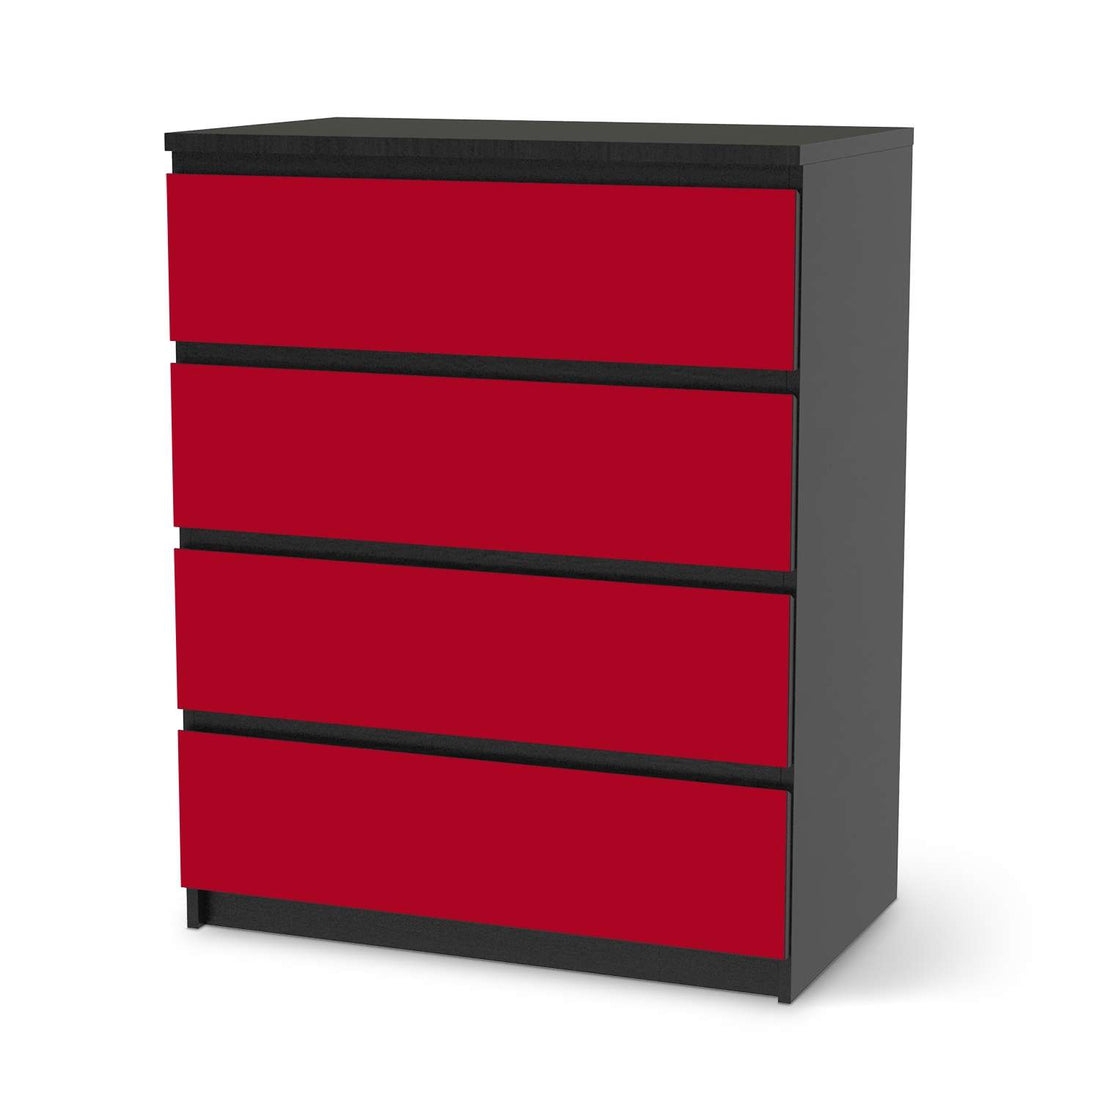 Folie für Möbel Rot Dark - IKEA Malm Kommode 4 Schubladen - schwarz